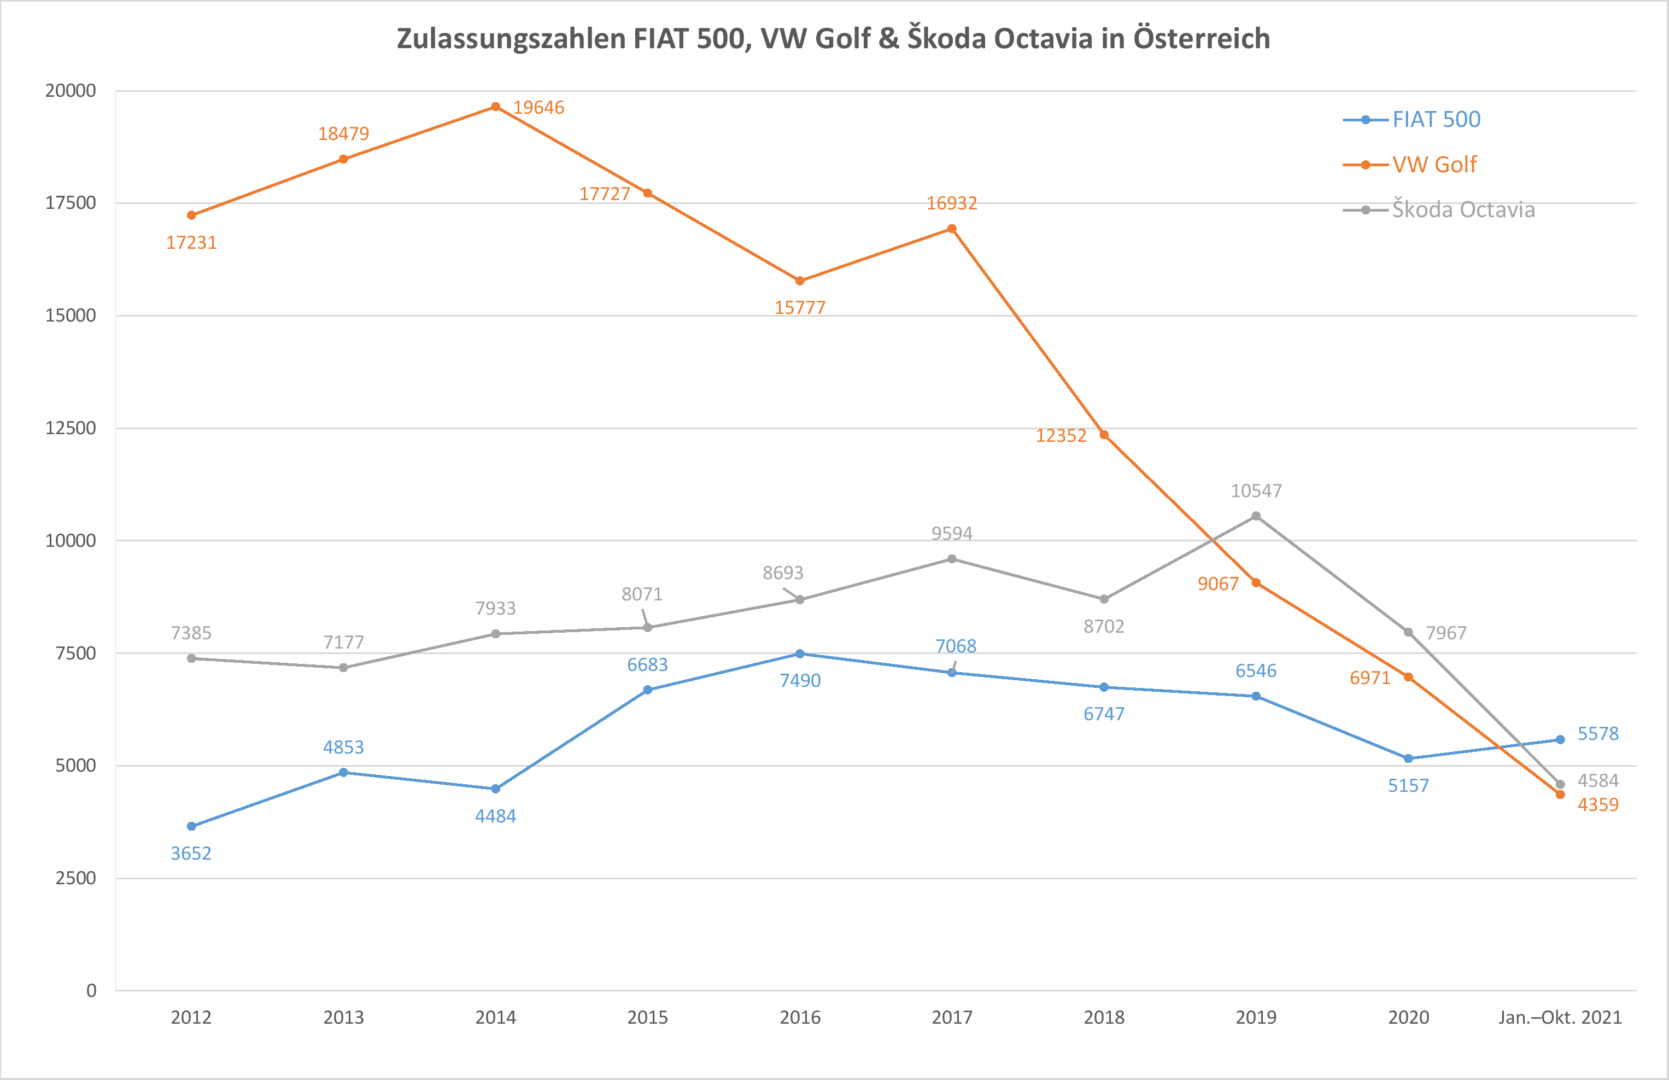 Zulassungszahlen von FIAT 500, VW Golf & Škoda Octavia seit 2012 in Österreich